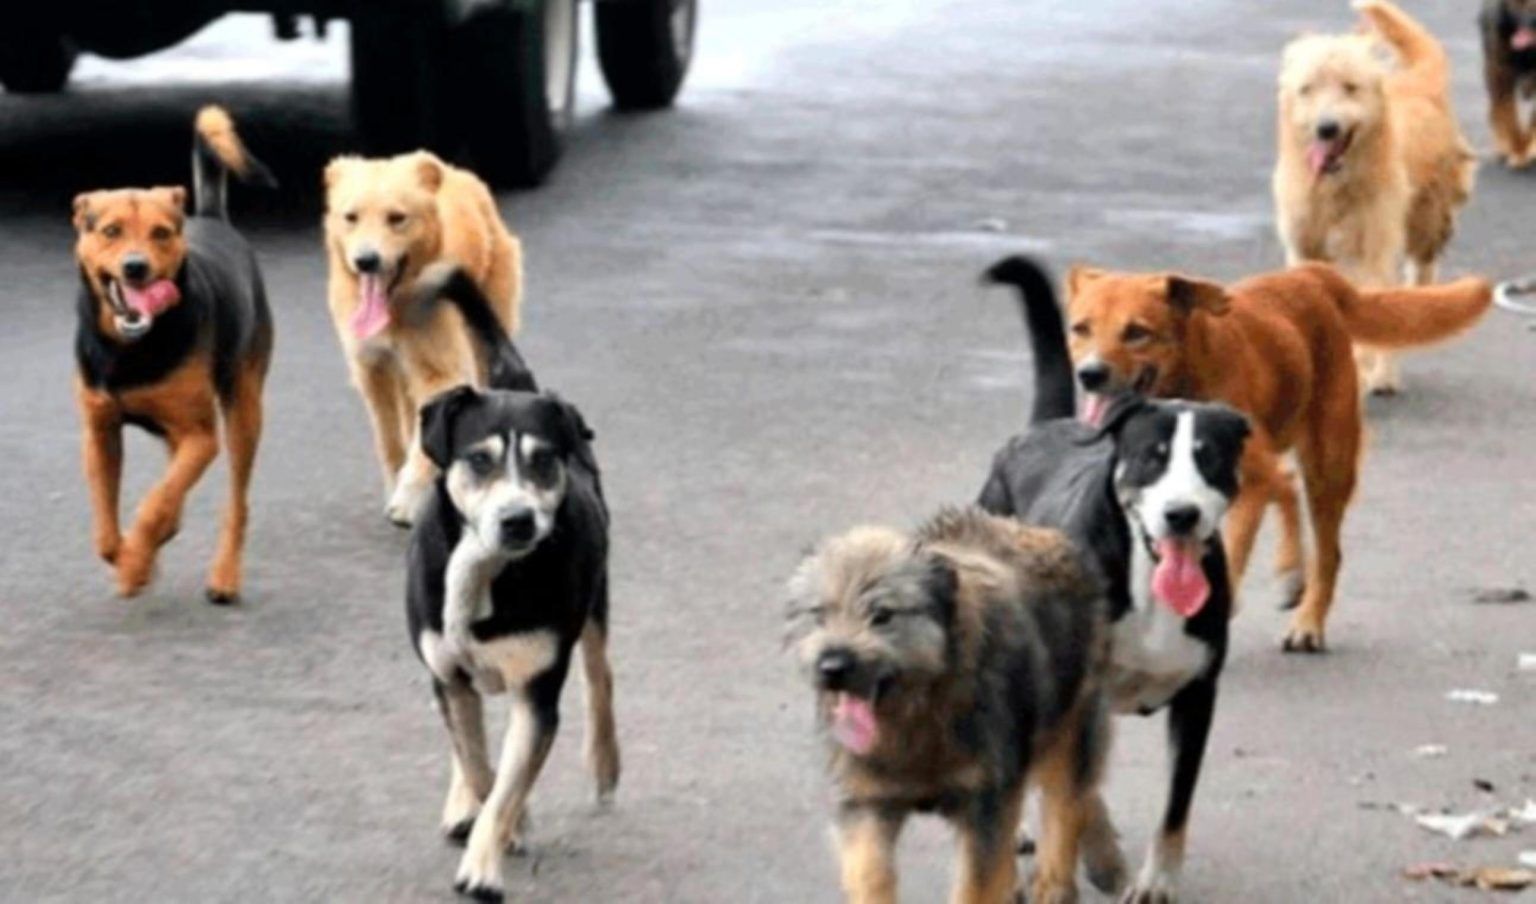 Las heces de los perros generan contaminación, según estudio